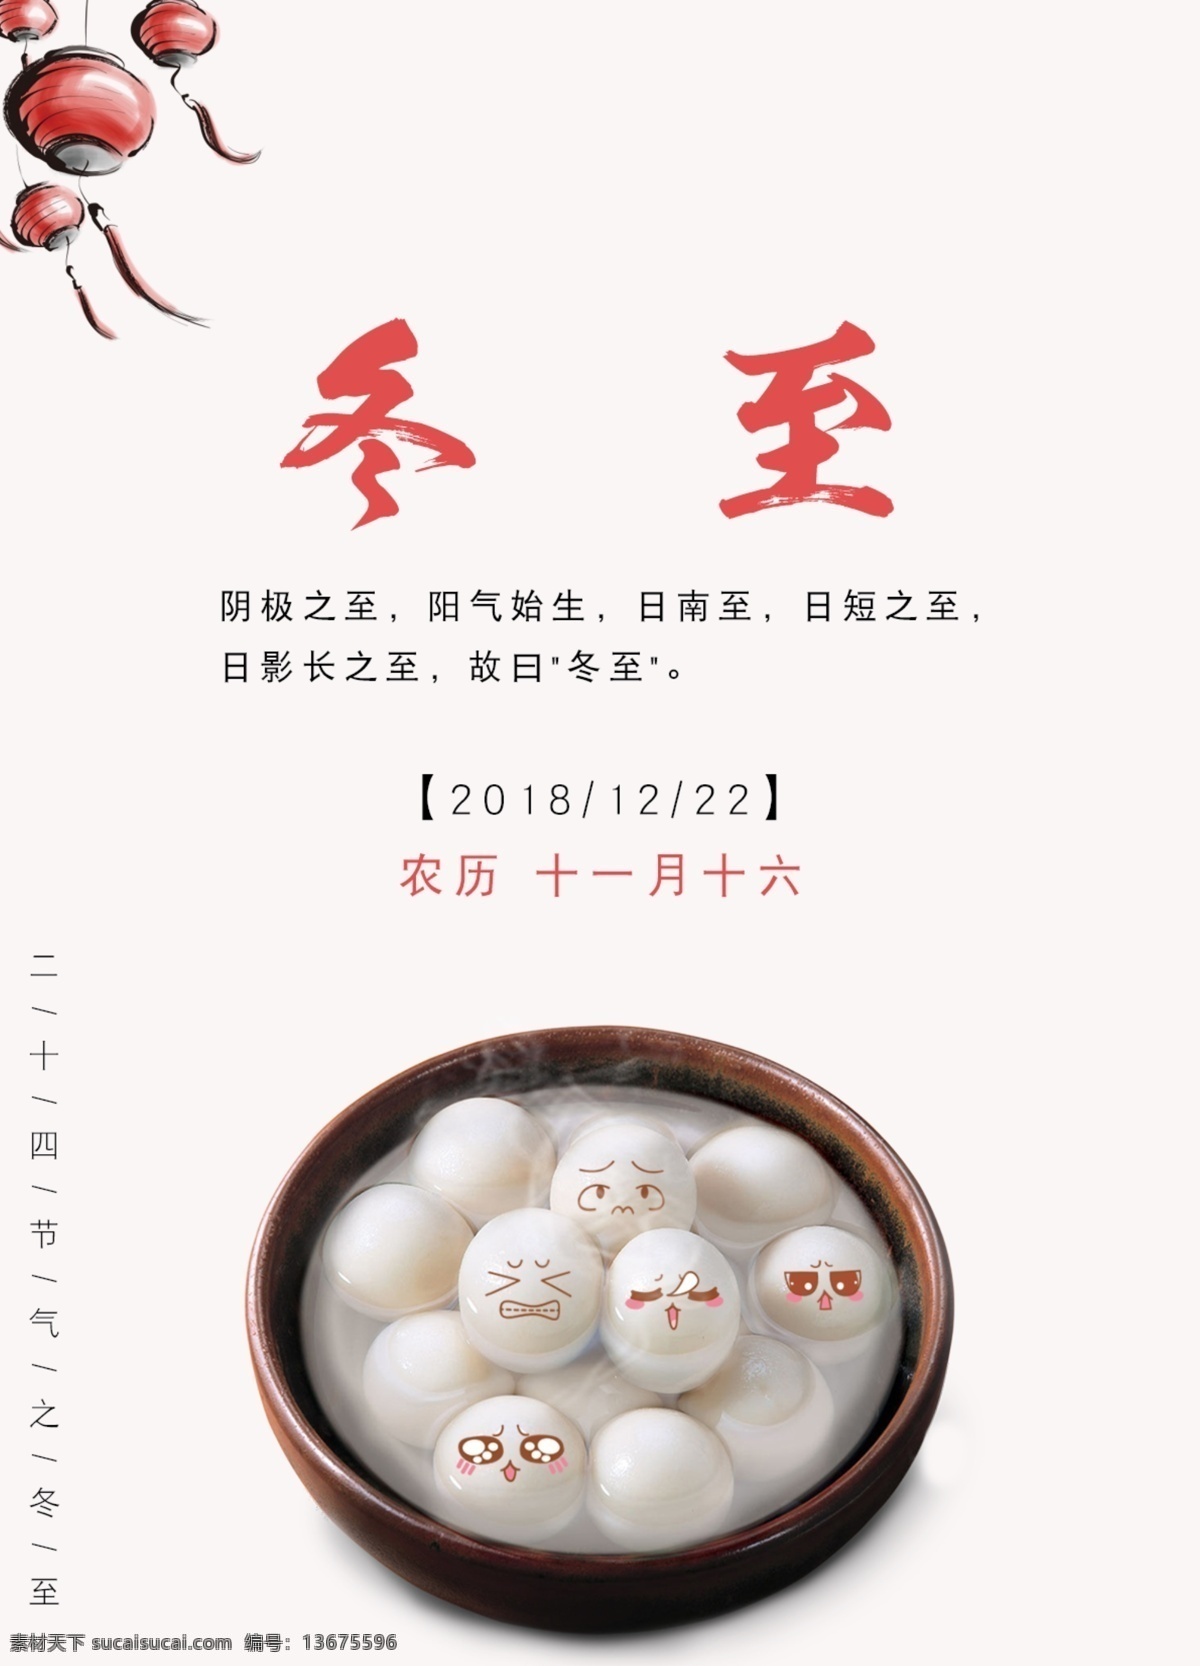 冬至 汤圆 二十四节气 海报 中国传统 节气